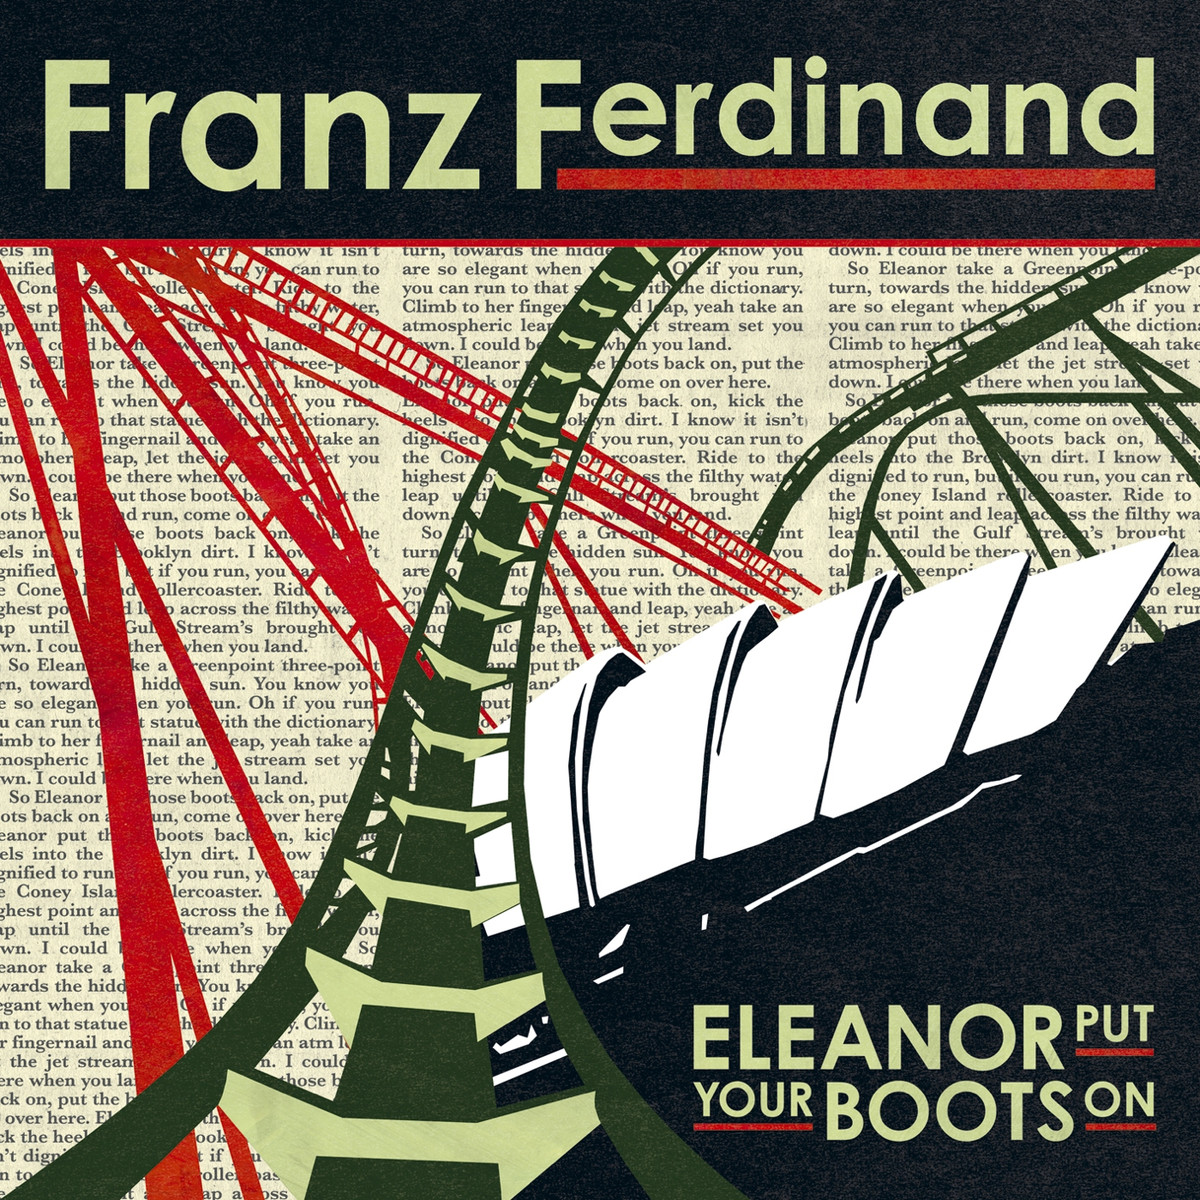 Элеанора кладёт твои ботинки может быть и так | Франц Фердинанд